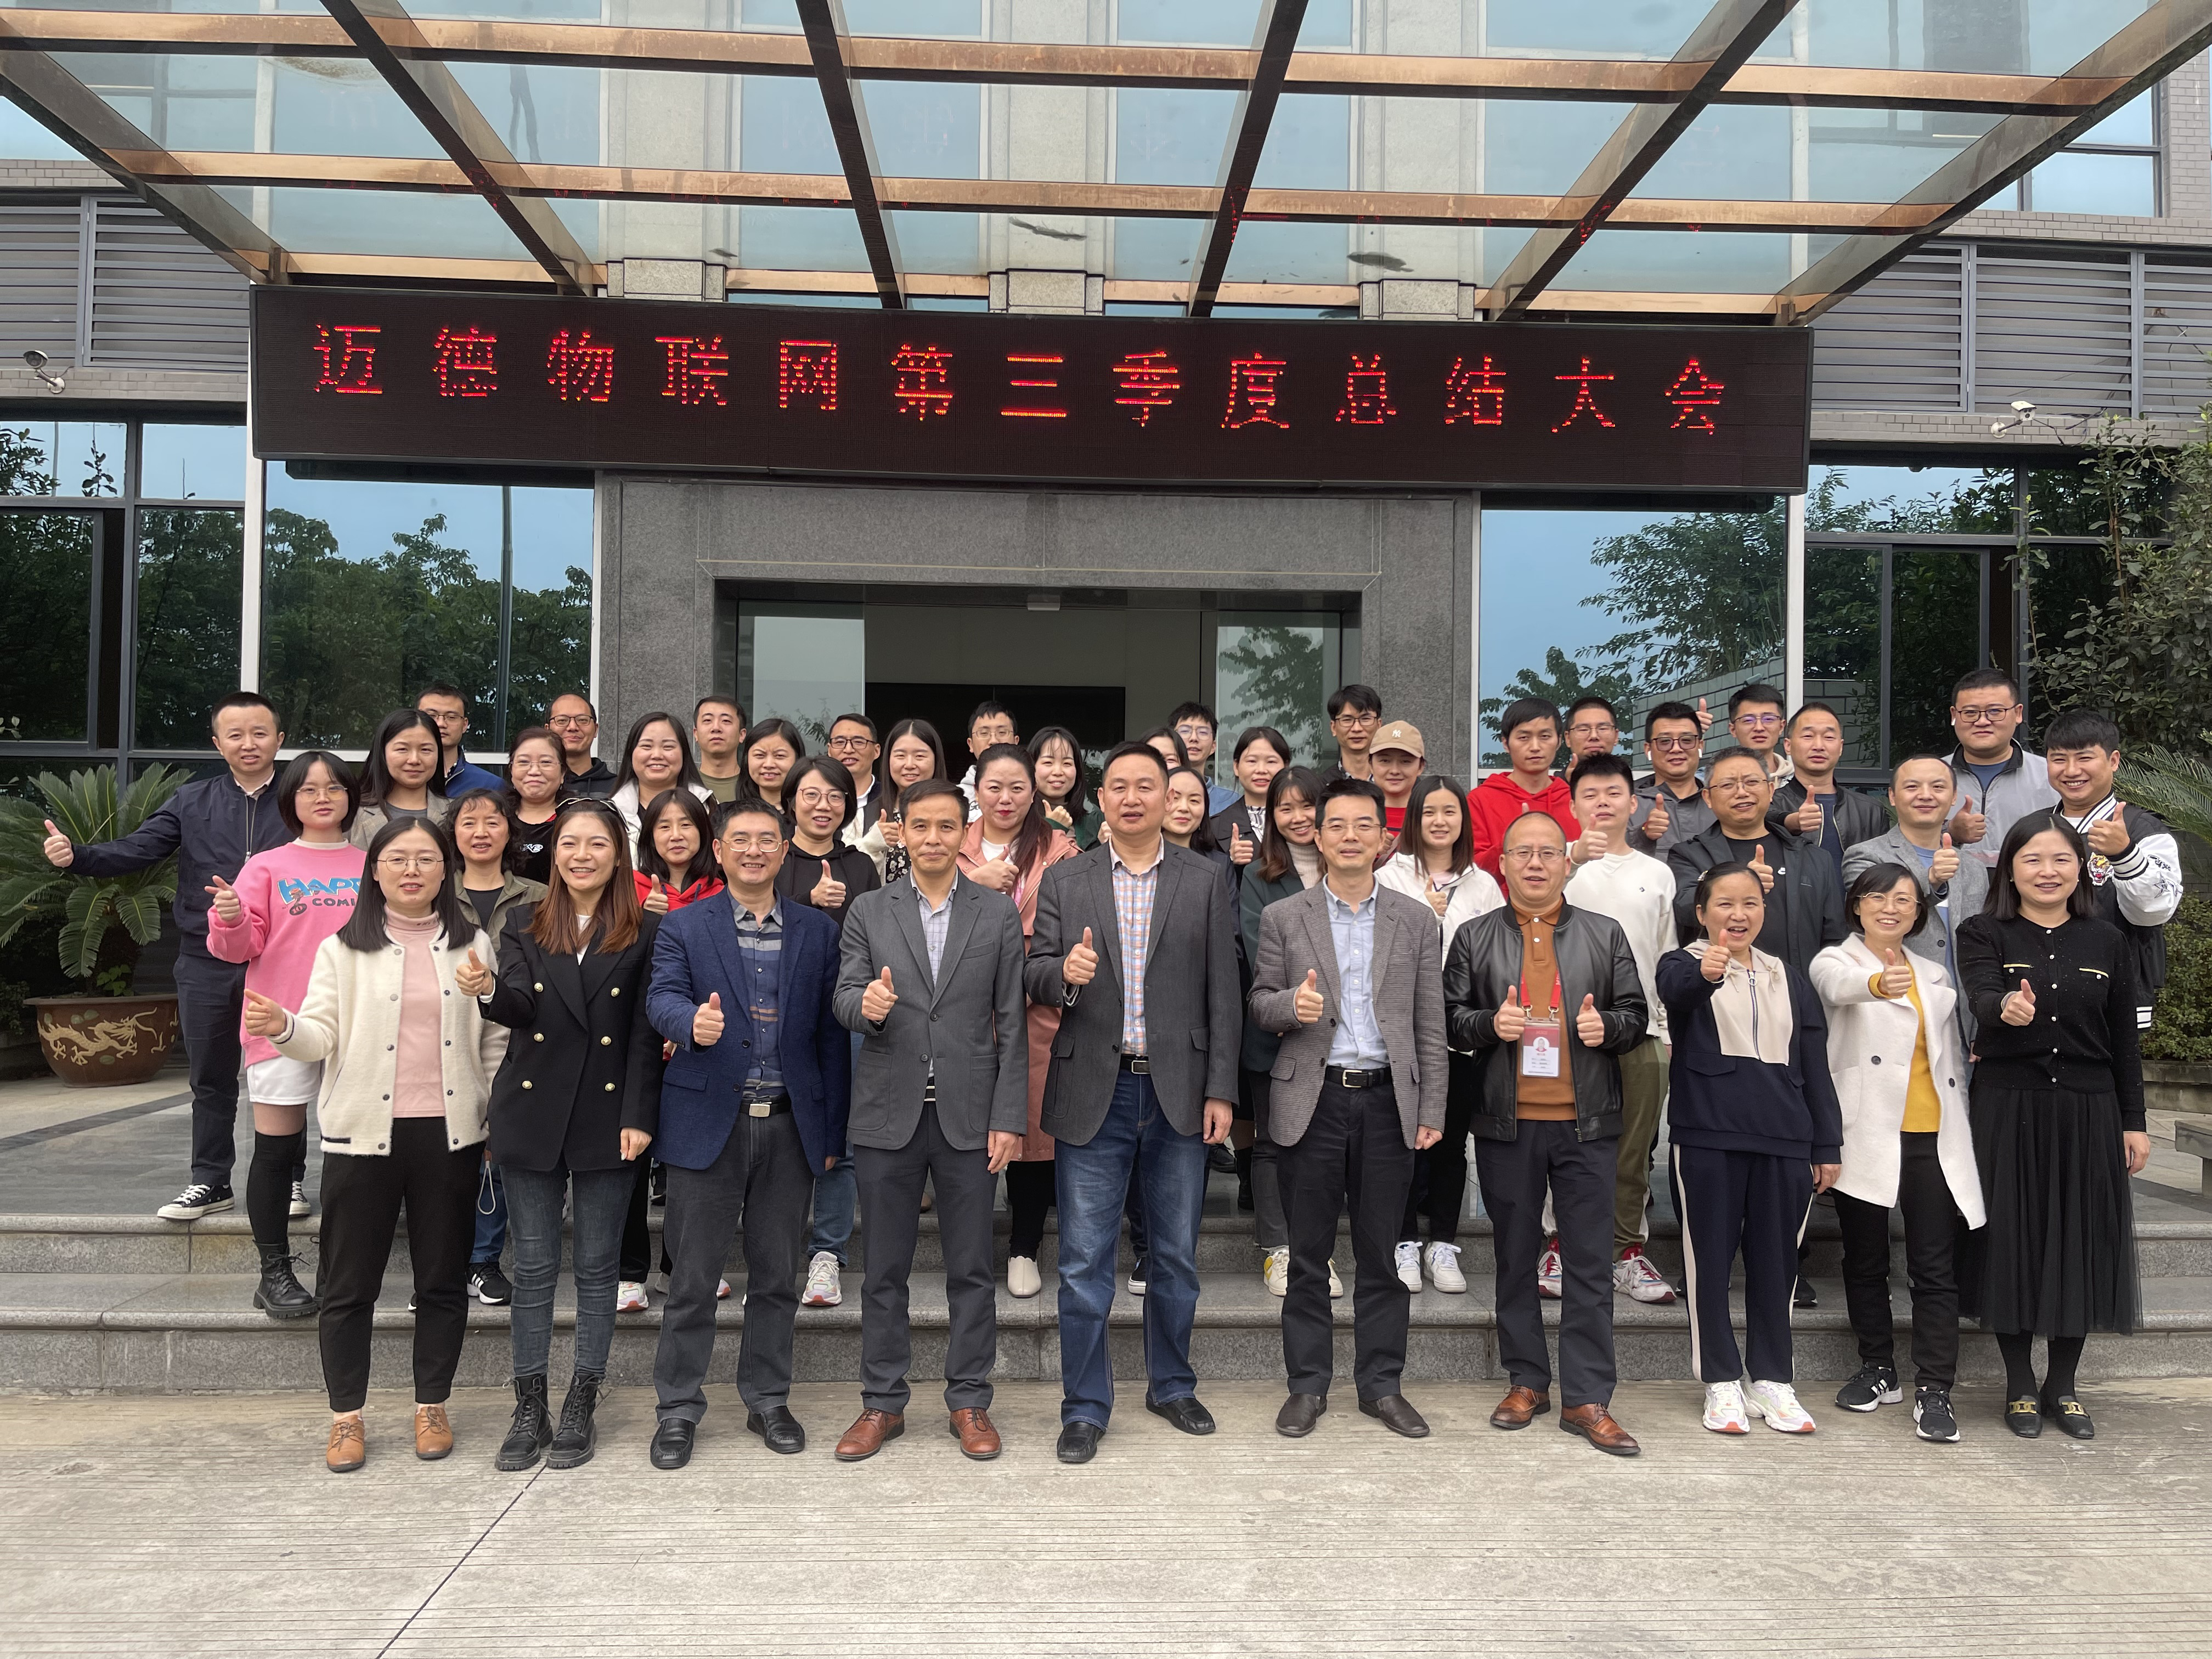 Xin chúc mừng nồng nhiệt cuộc họp tổng kết quý 3 của công ty Chengdu Mind đã tổ chức thành công